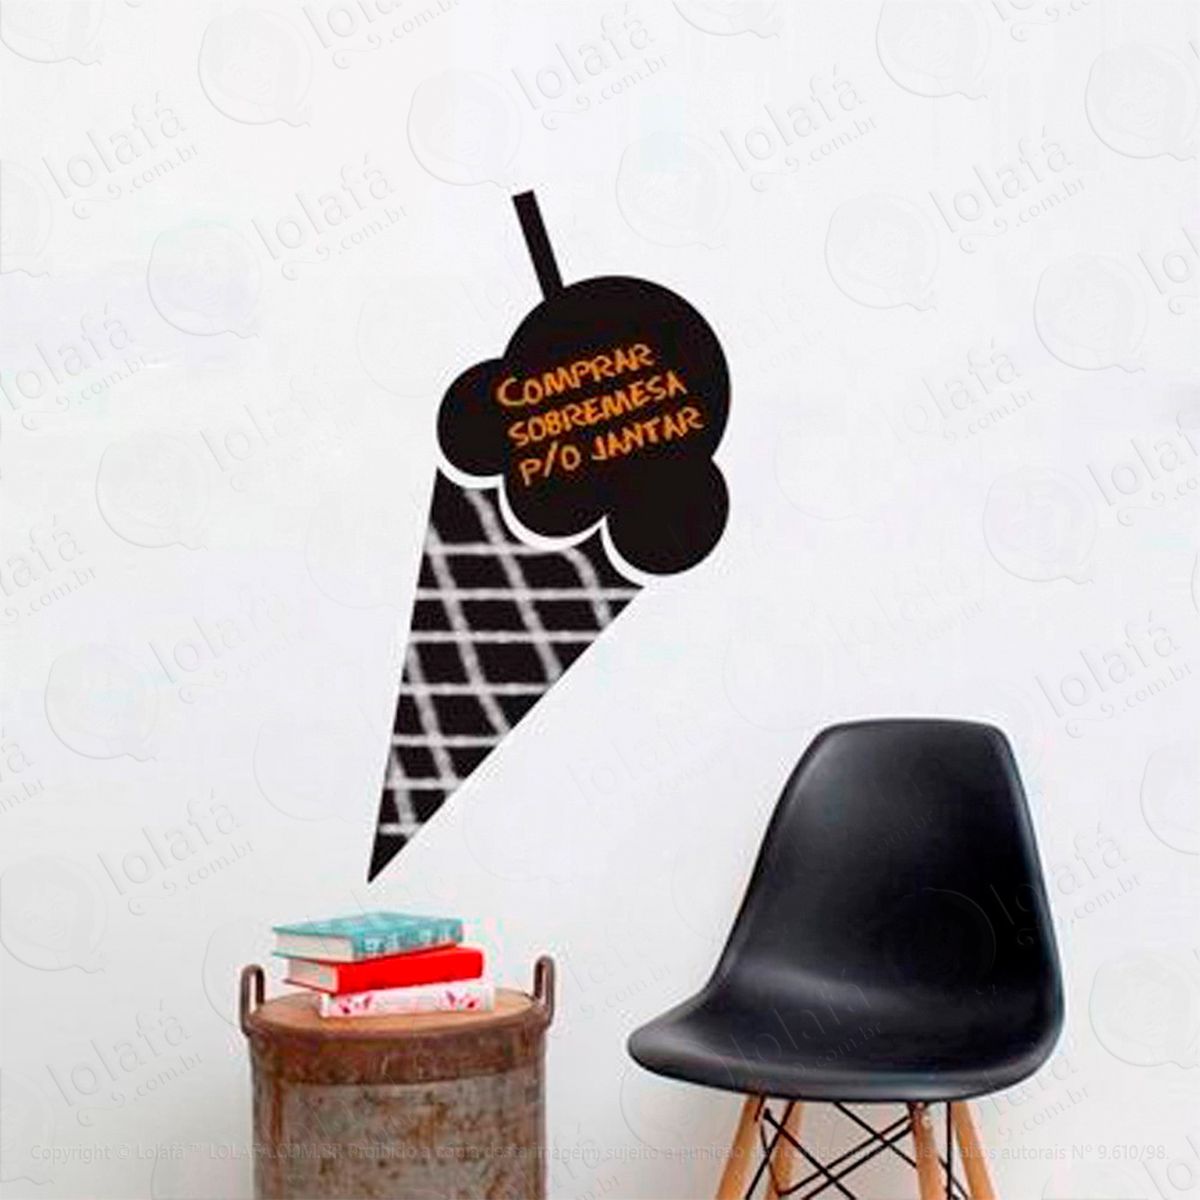 sorvete adesivo lousa quadro negro de parede para escrever com giz - mod:268